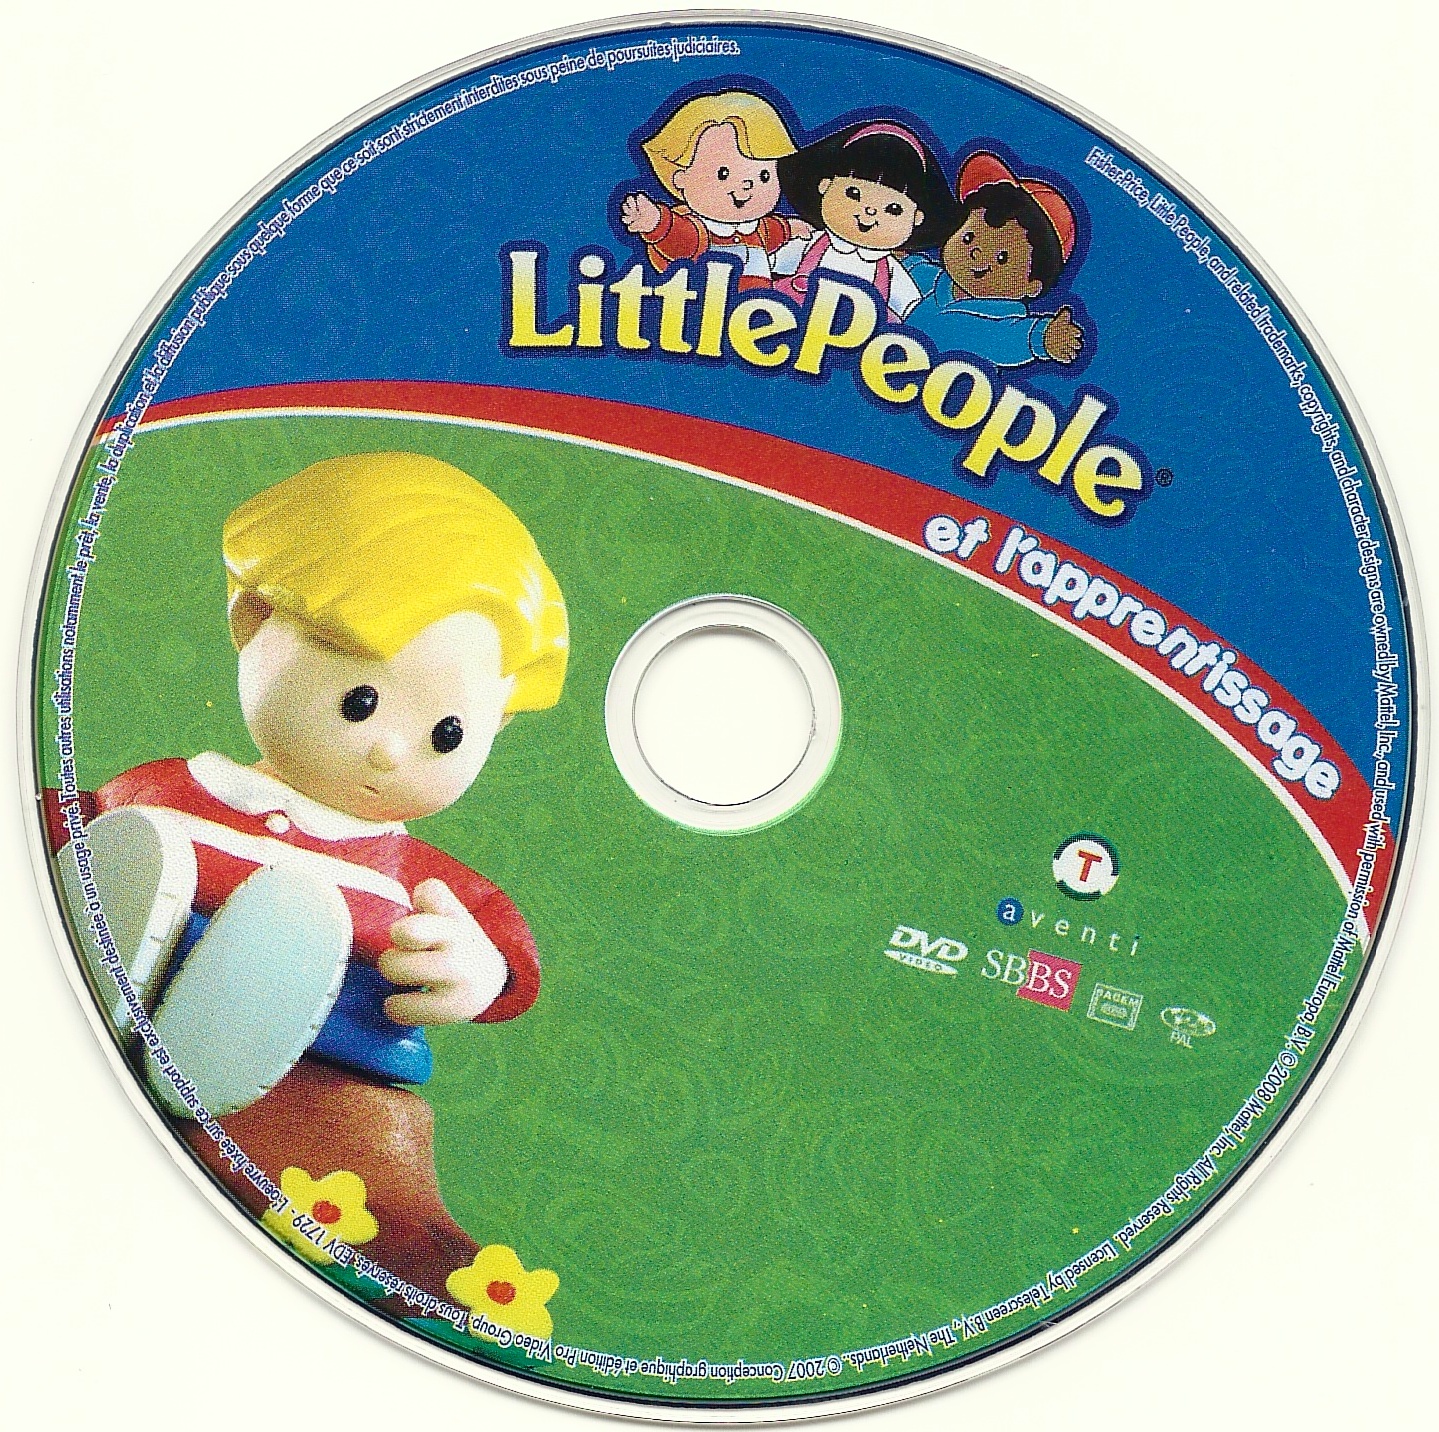 Little people et l